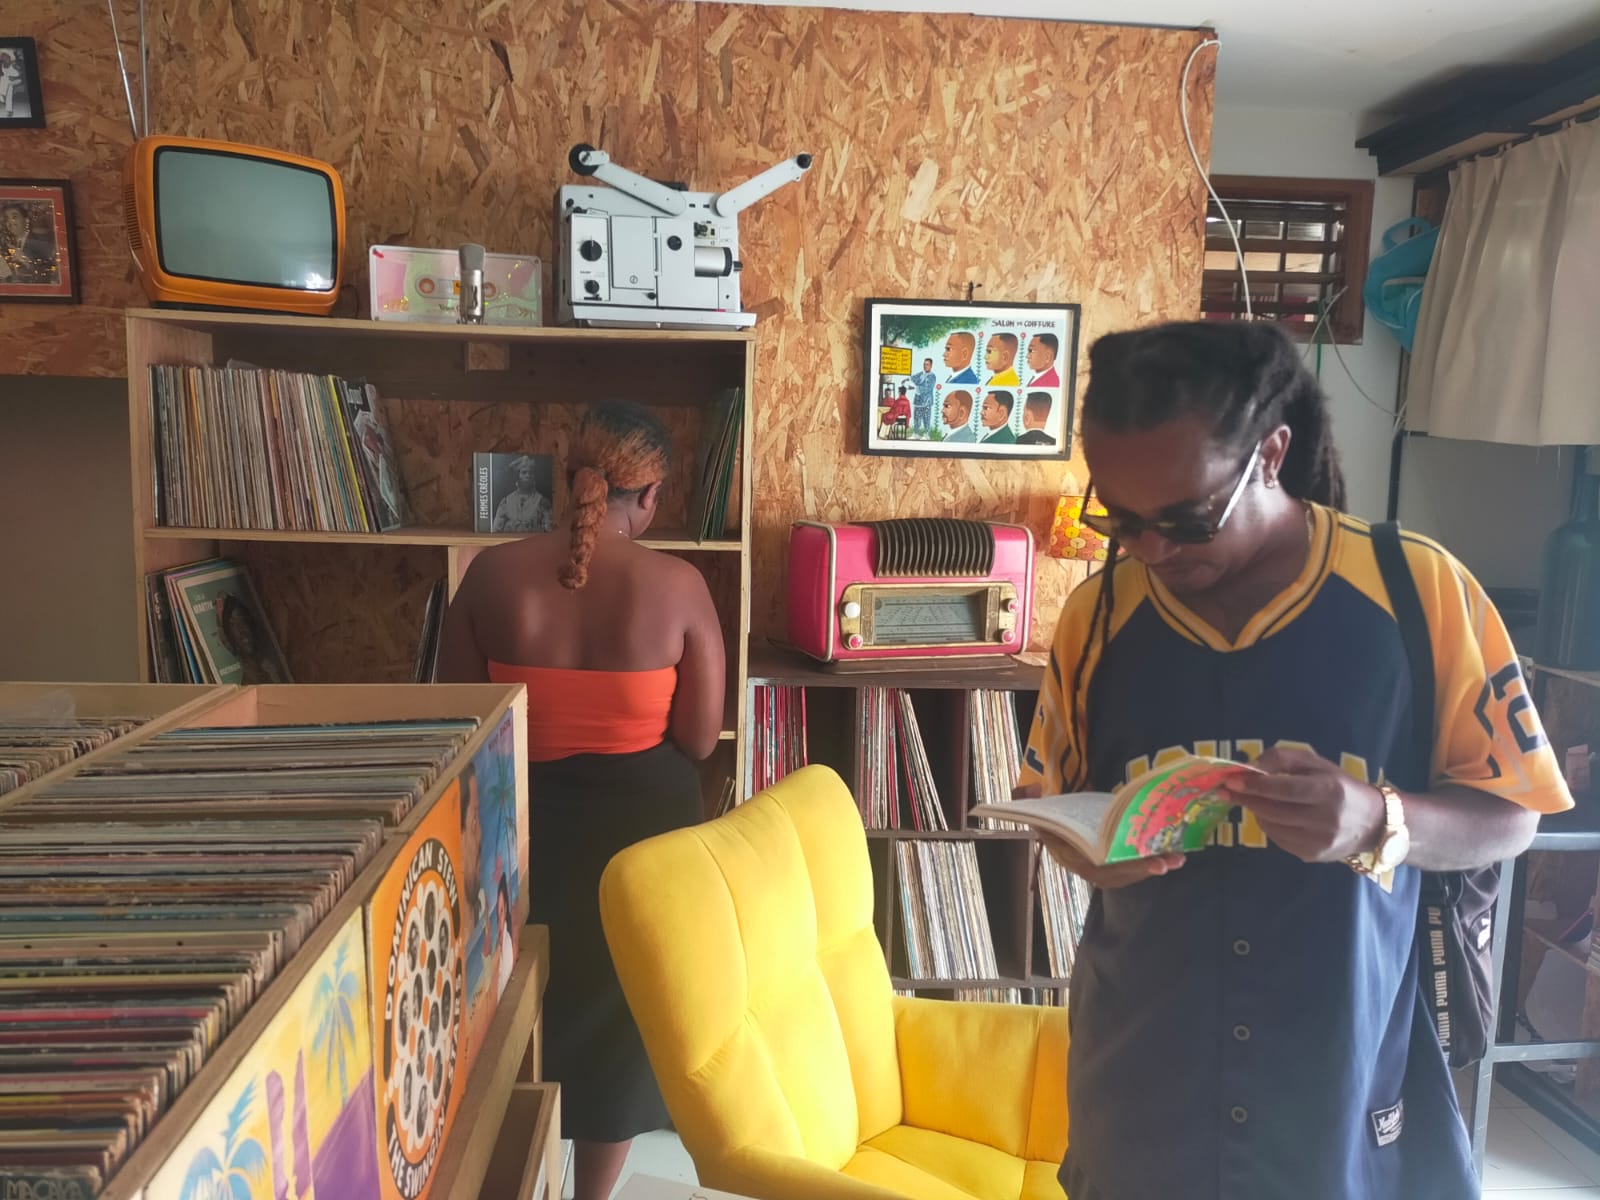     La 1ère « Vinylothèque » des Antilles a ouvert en Guadeloupe

